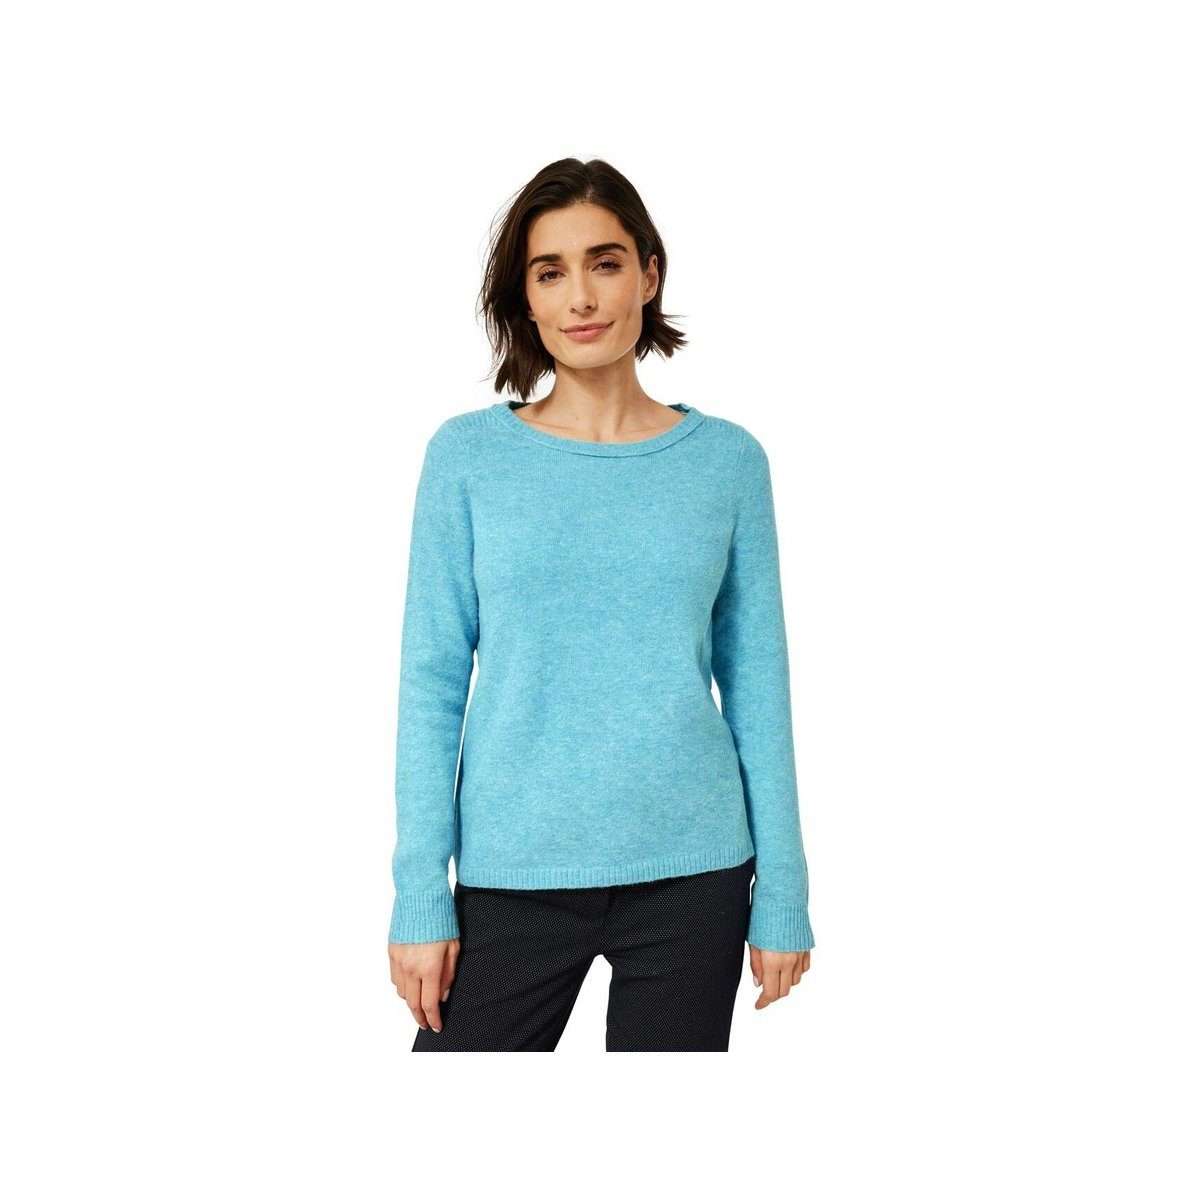 Свитер с круглым вырезом Уютный свитер цвета Aquatic Blue Melange (1 шт.) Свободного кроя